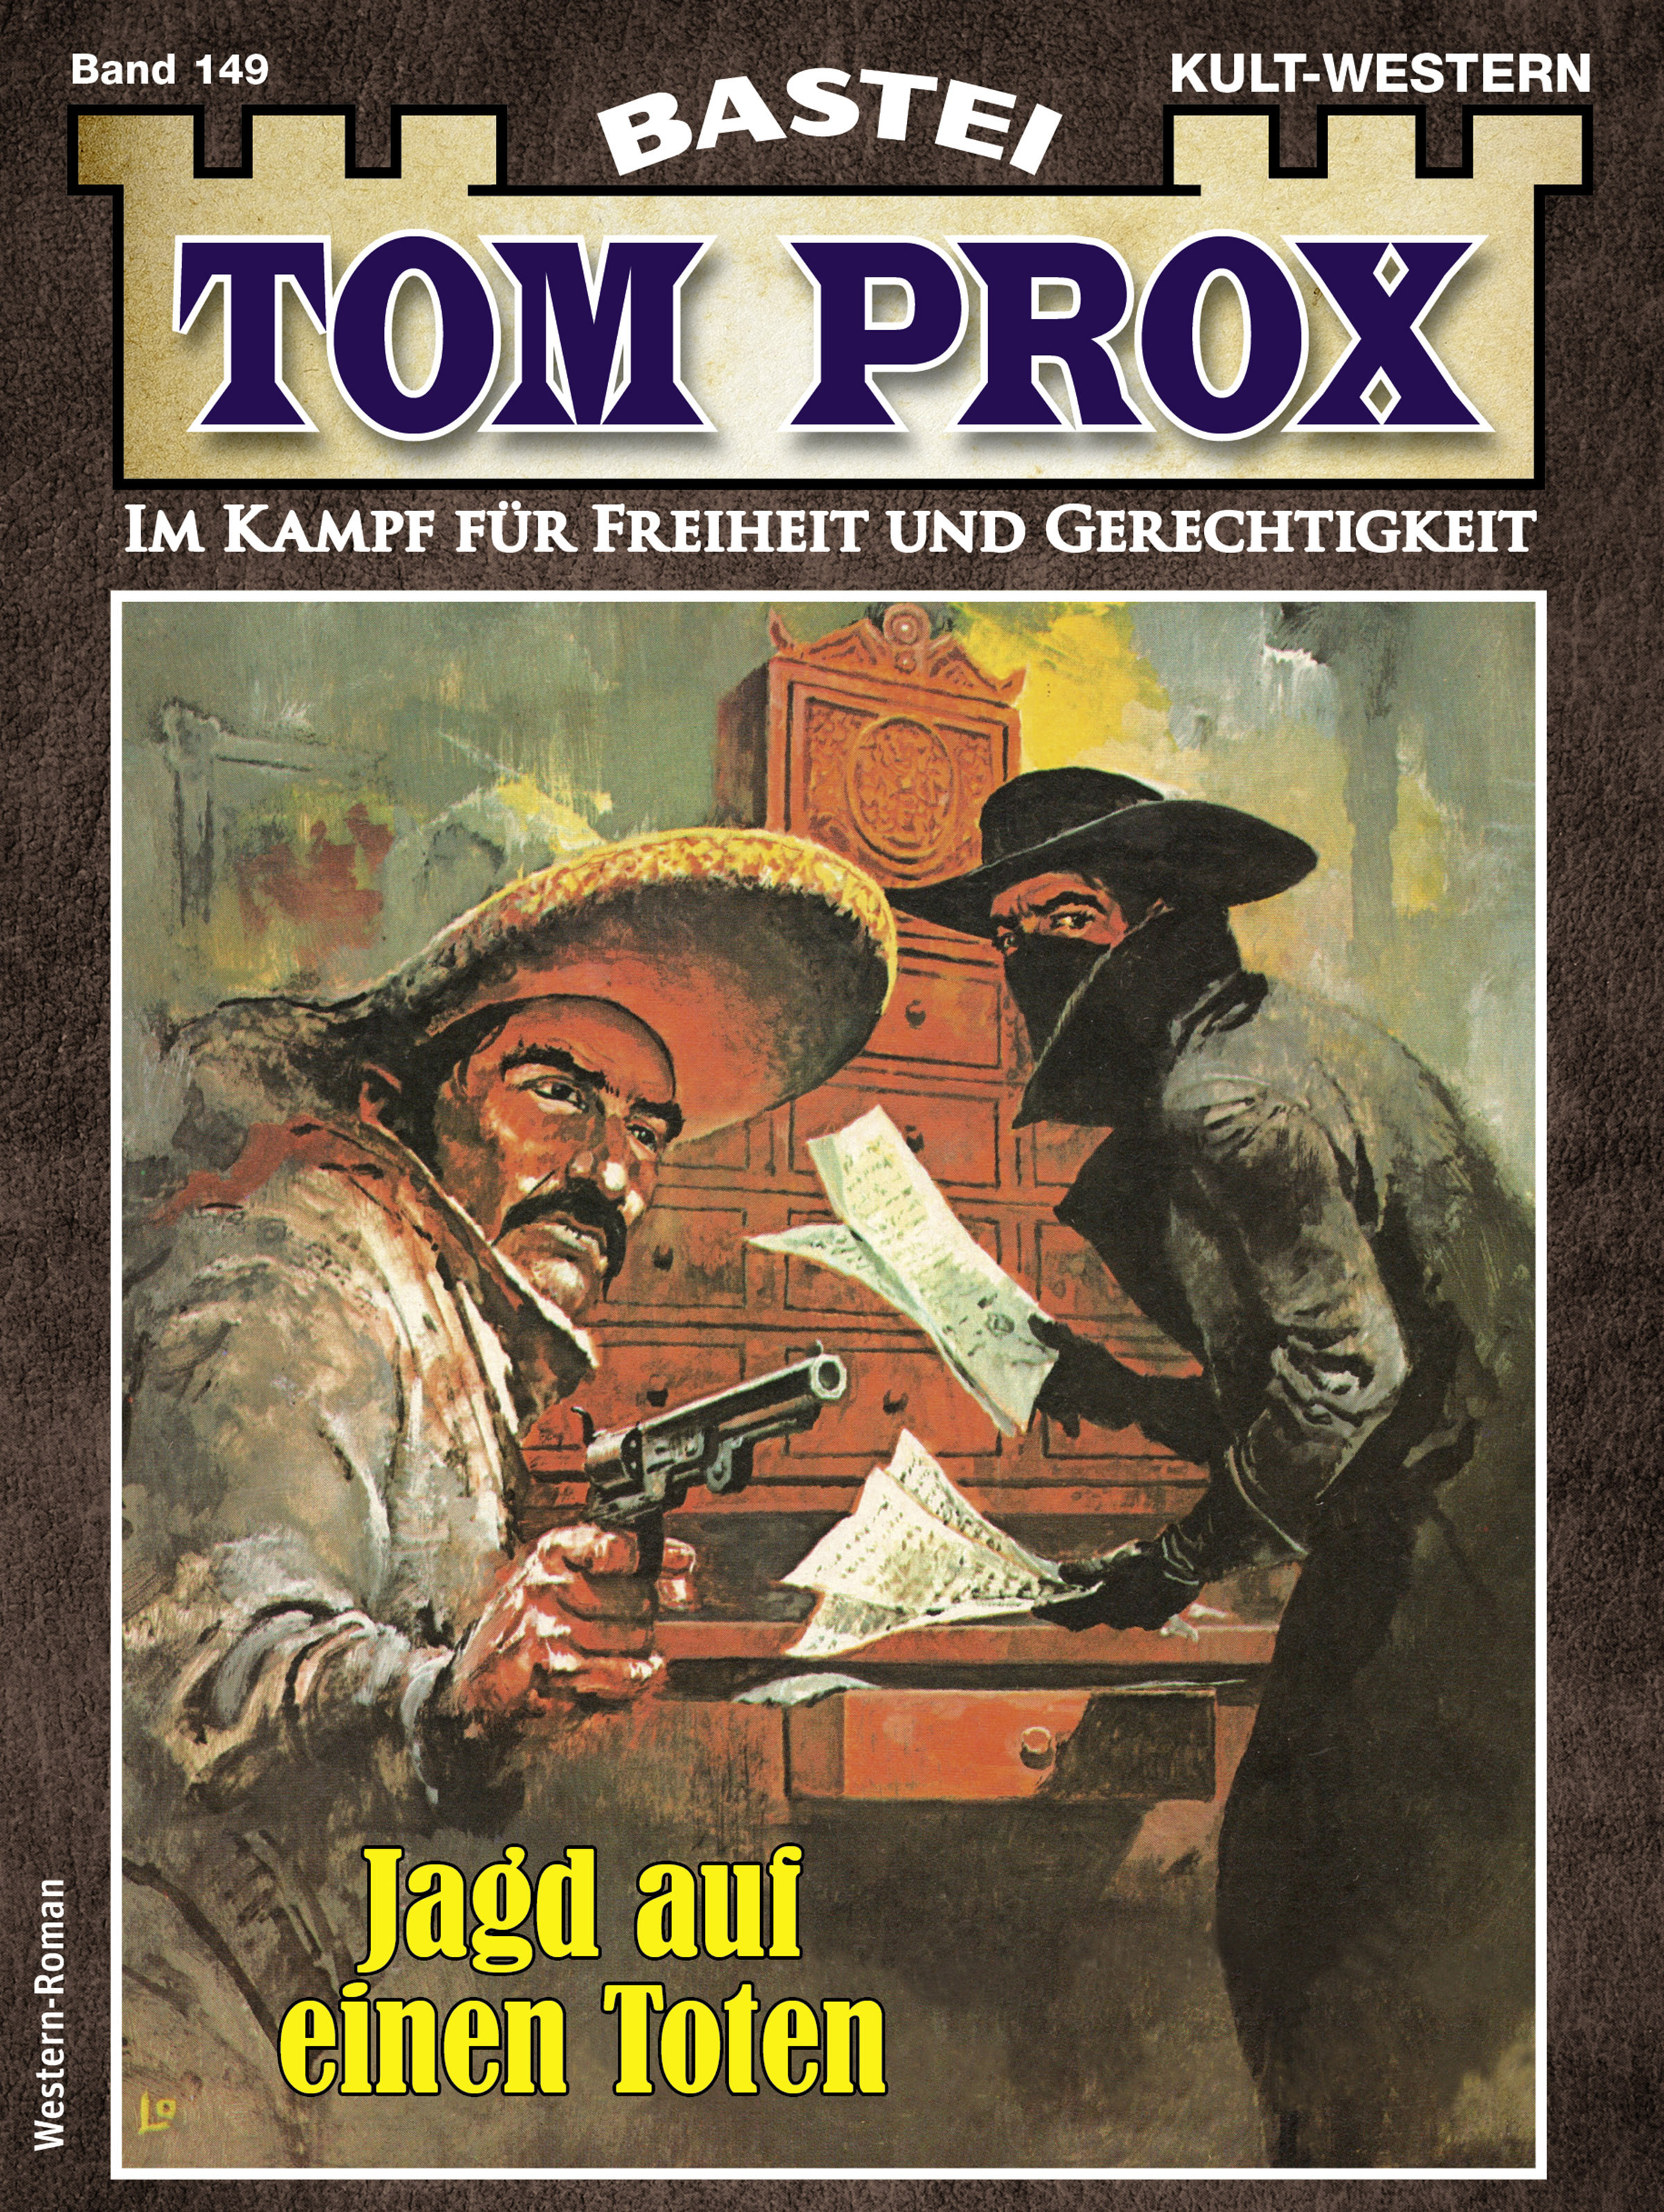 Tom Prox